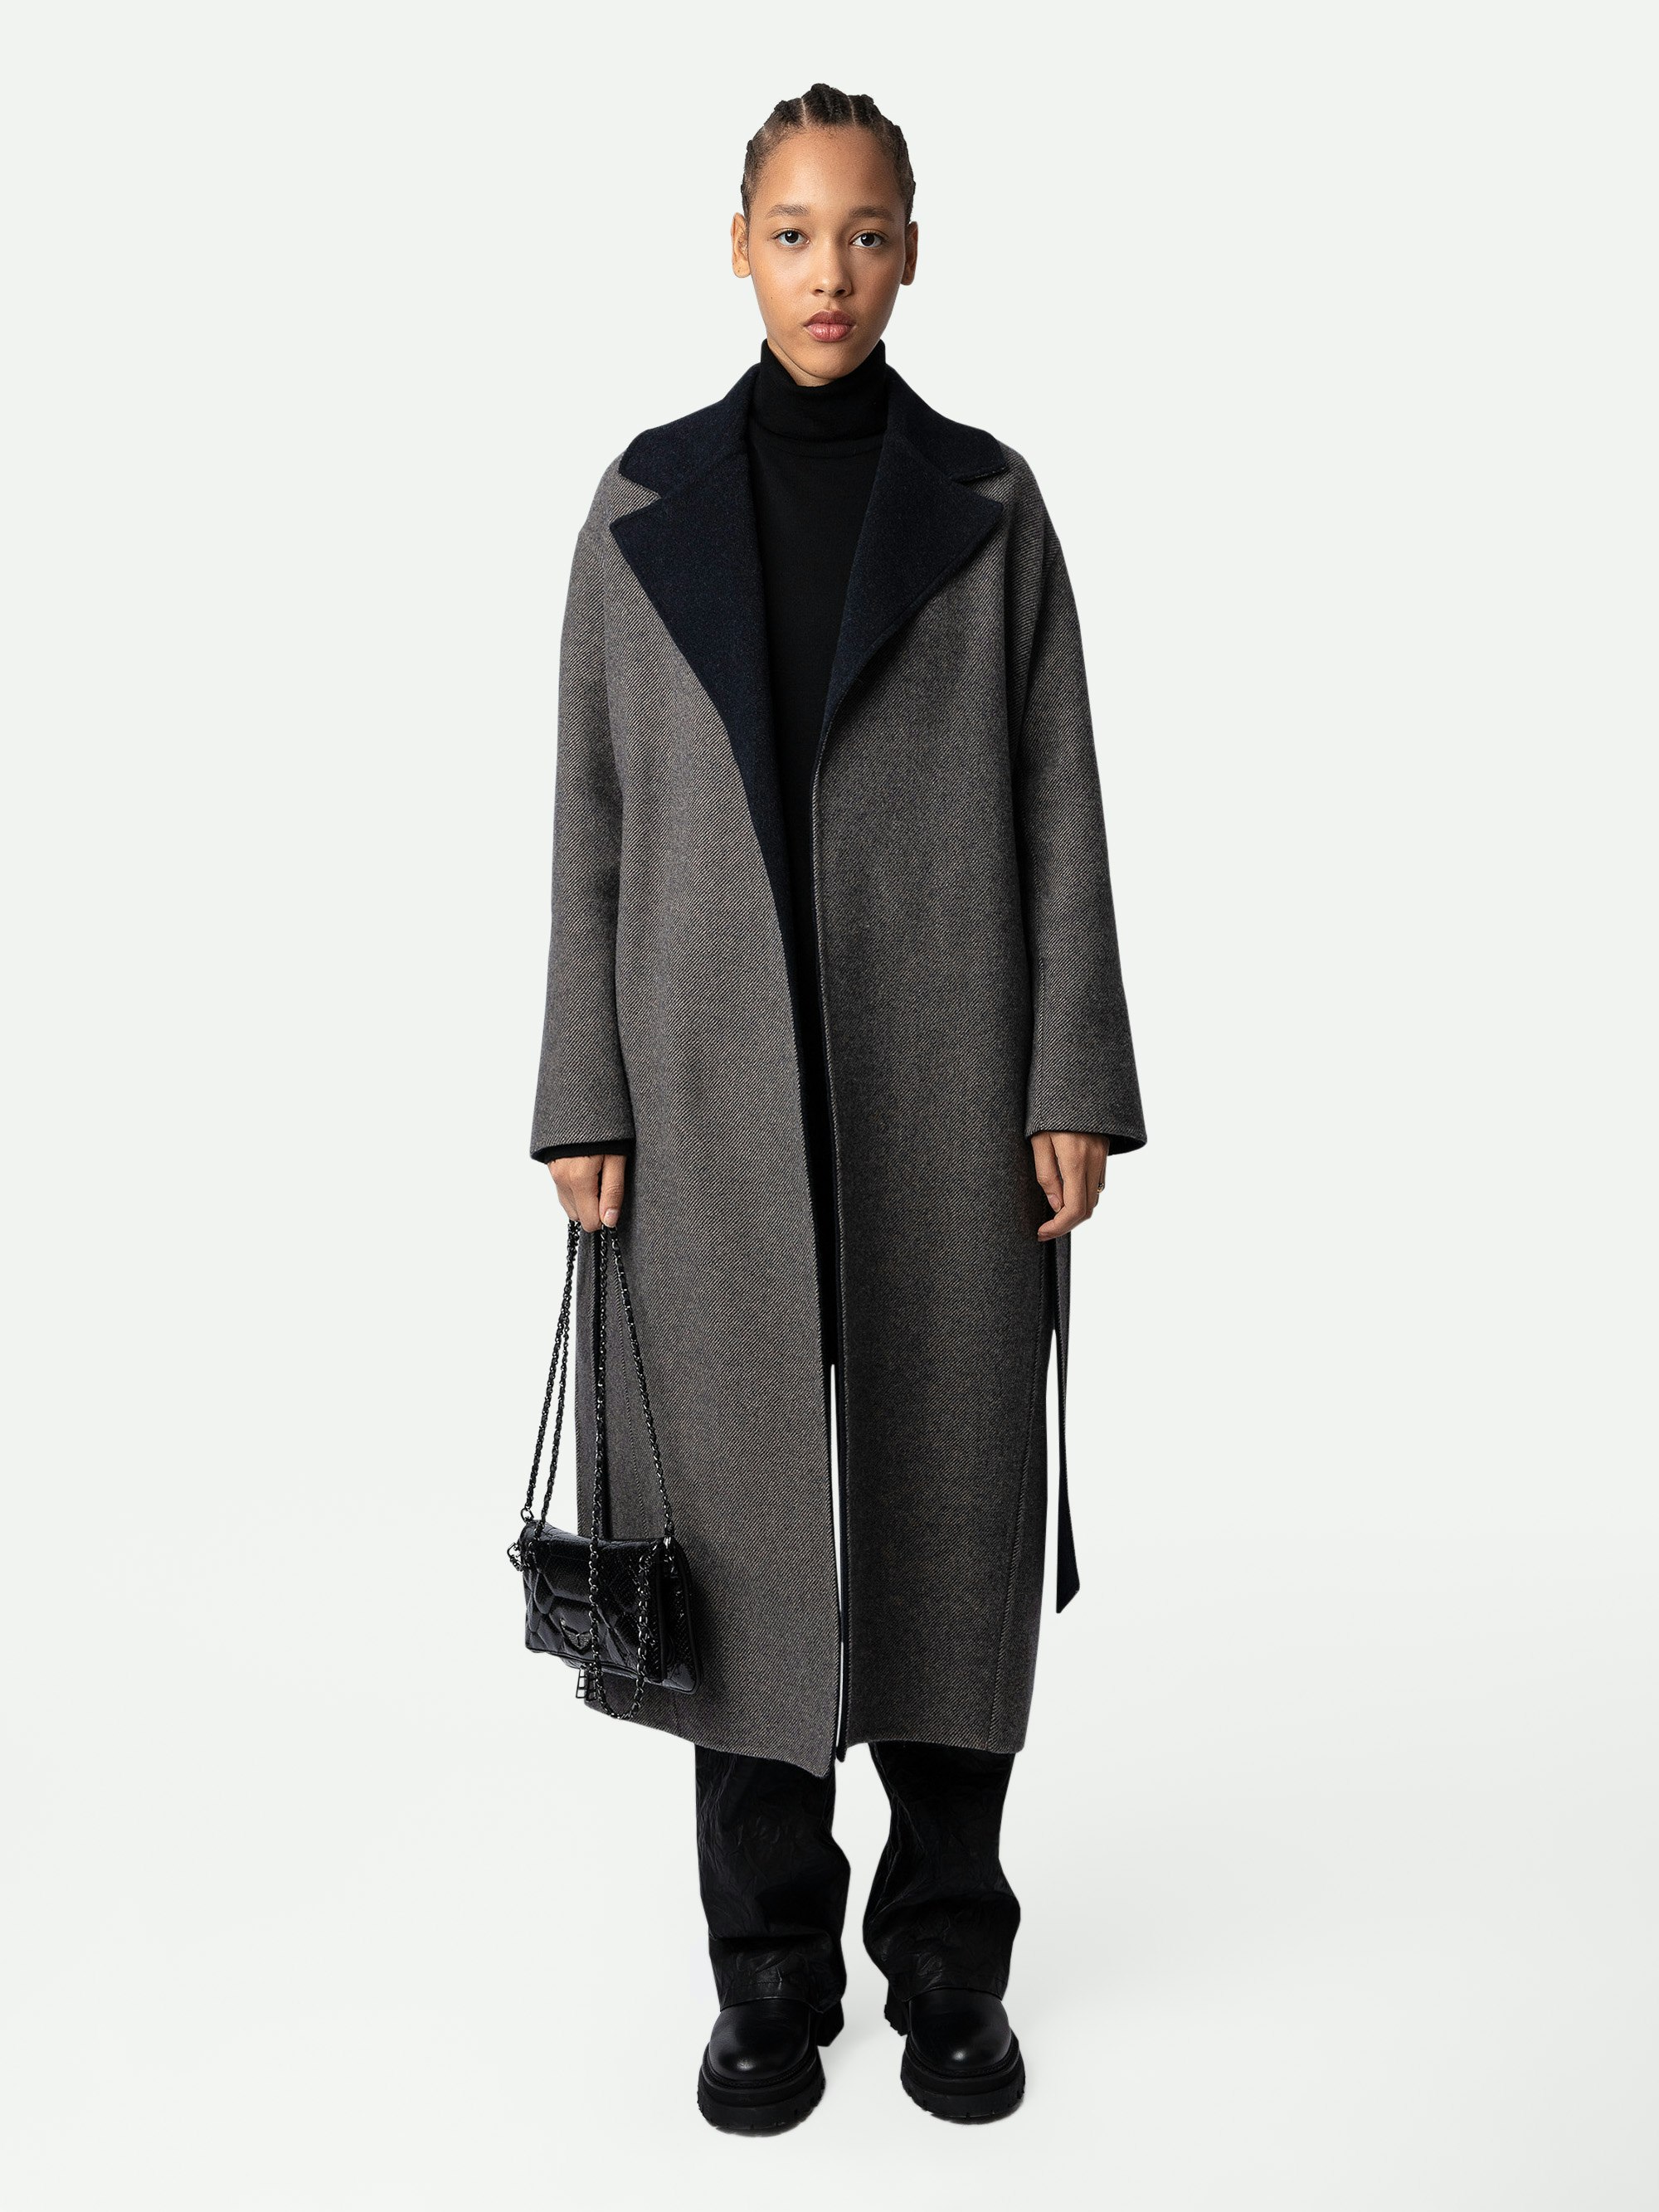 Abrigo Meli - Abrigo largo de lana en color negro con cinturón, cuello de contraste y motivo de alas en la espalda para mujer.